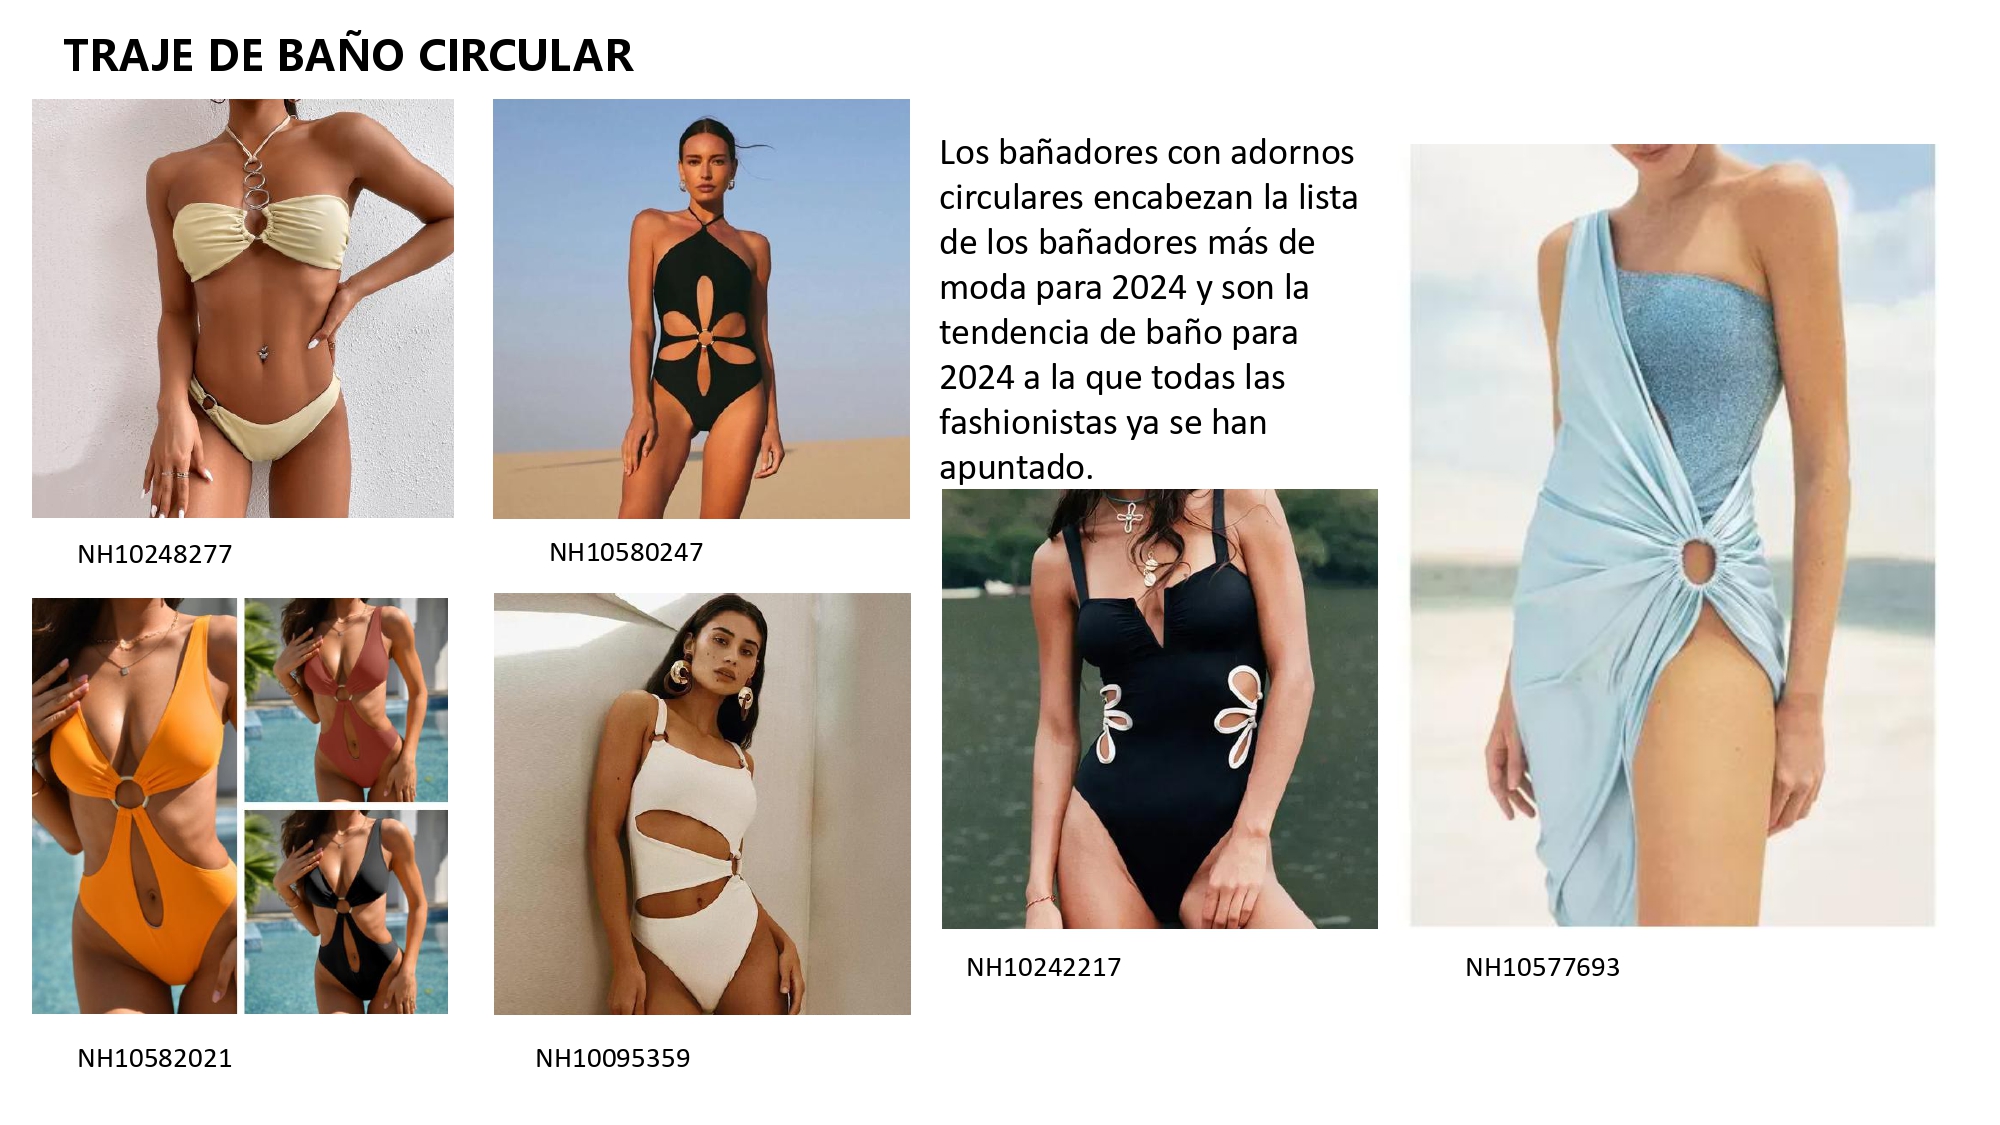 Los bañadores con adornos circulares encabezan la lista de los bañadores más de moda para 2024